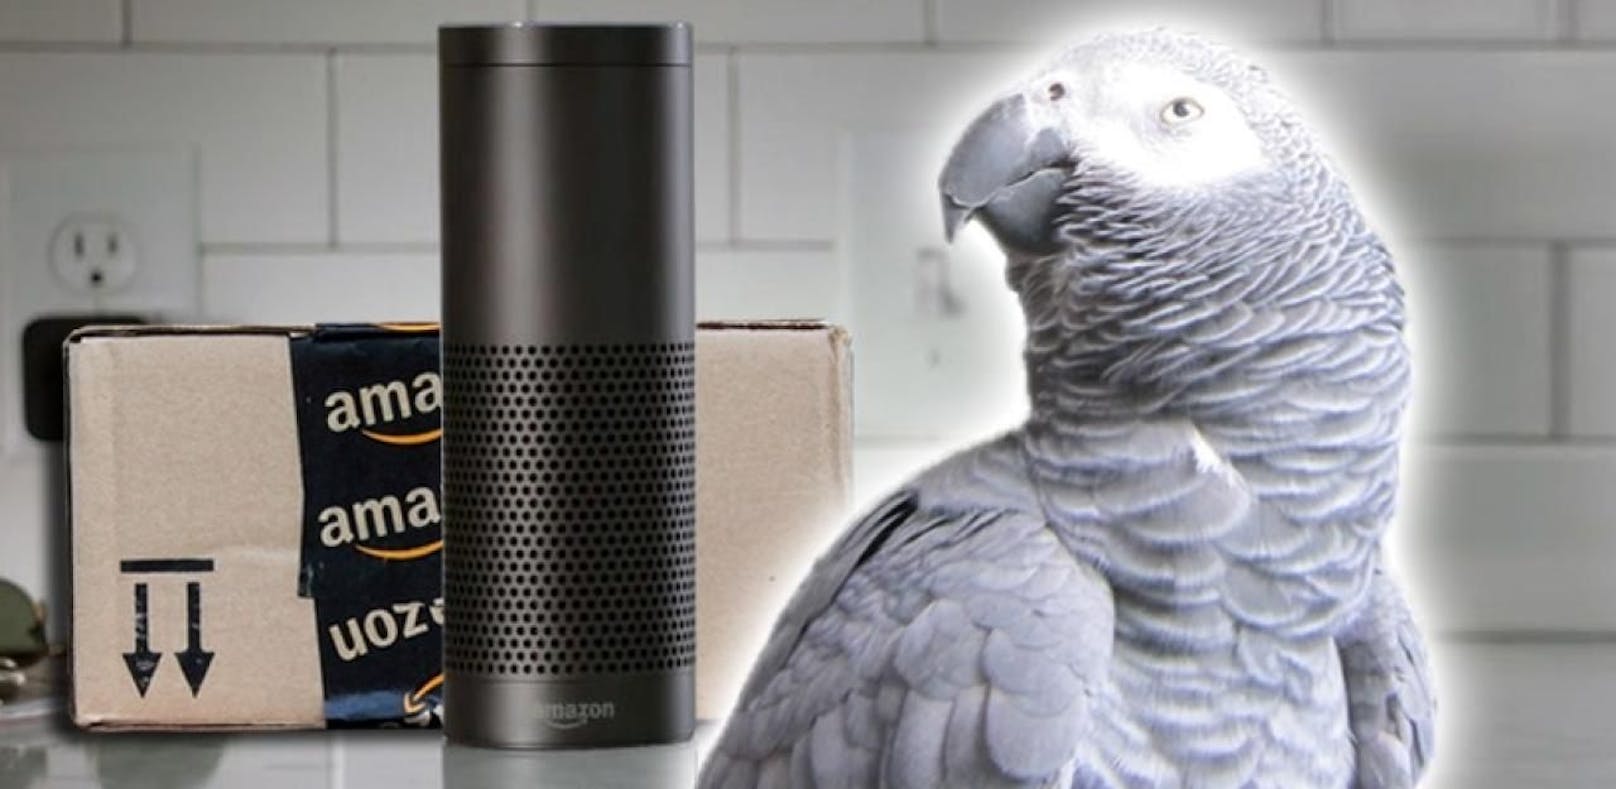 Papagei bestellte via "Alexa" bei Amazon